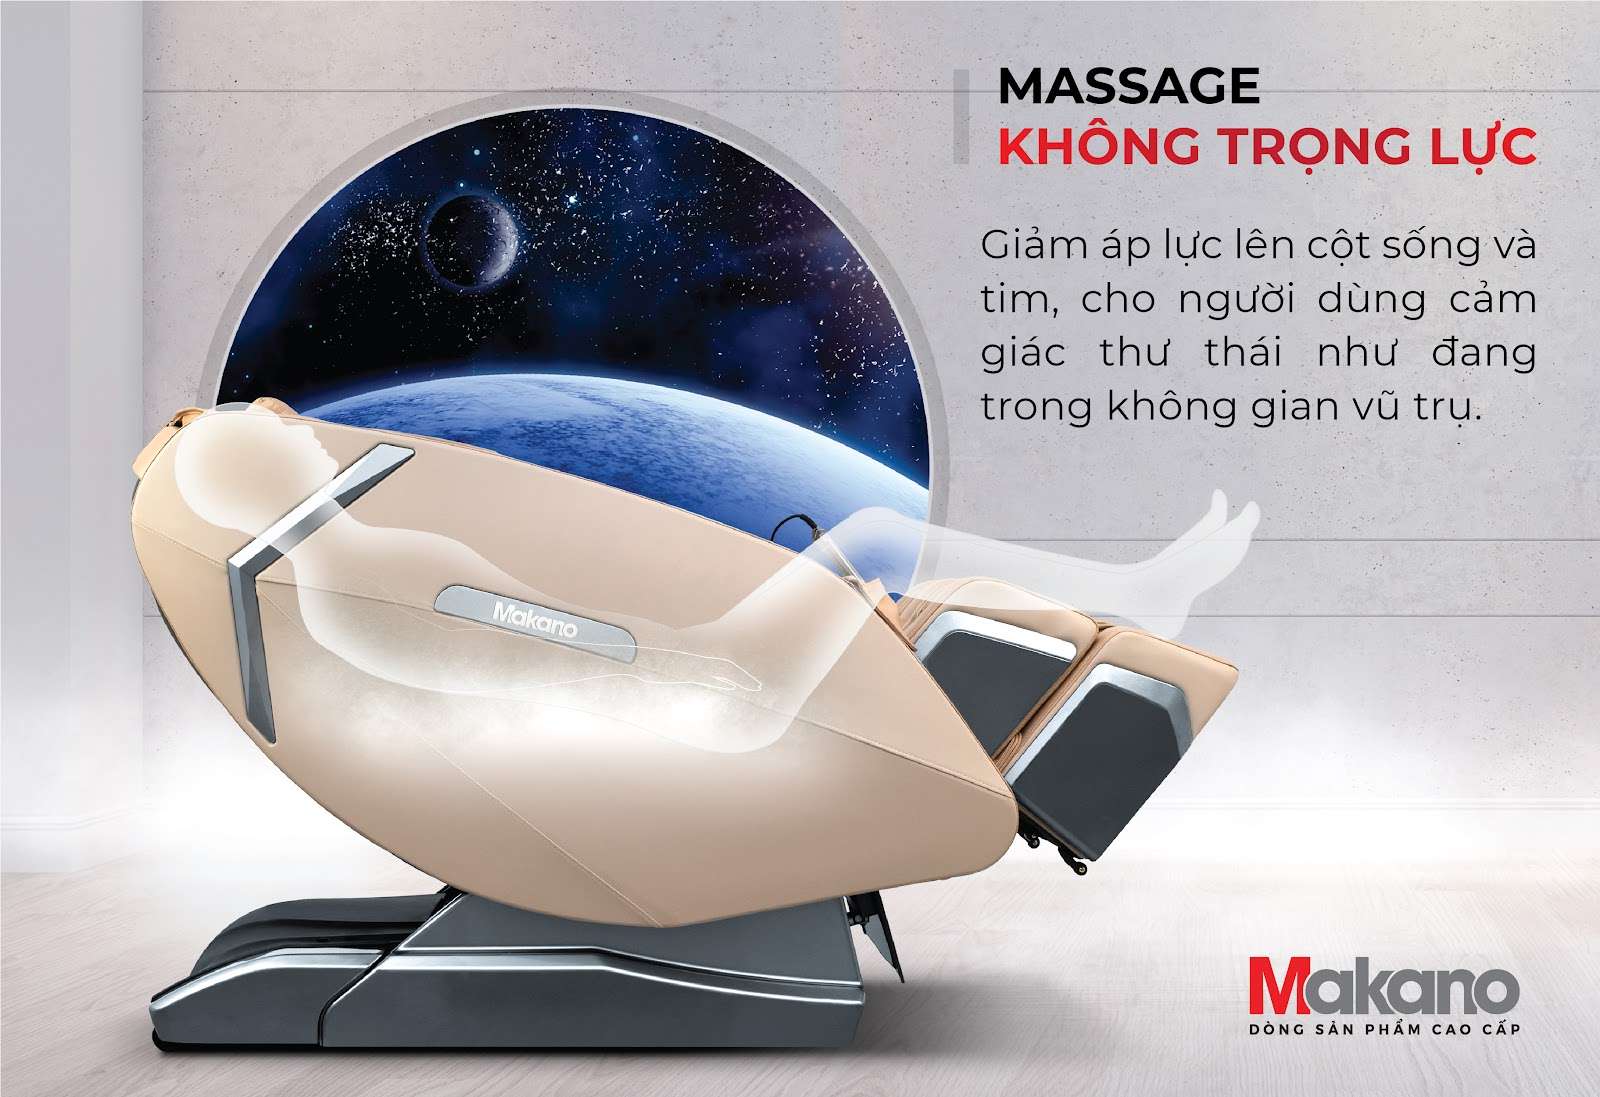 chế độ massage không trọng lực